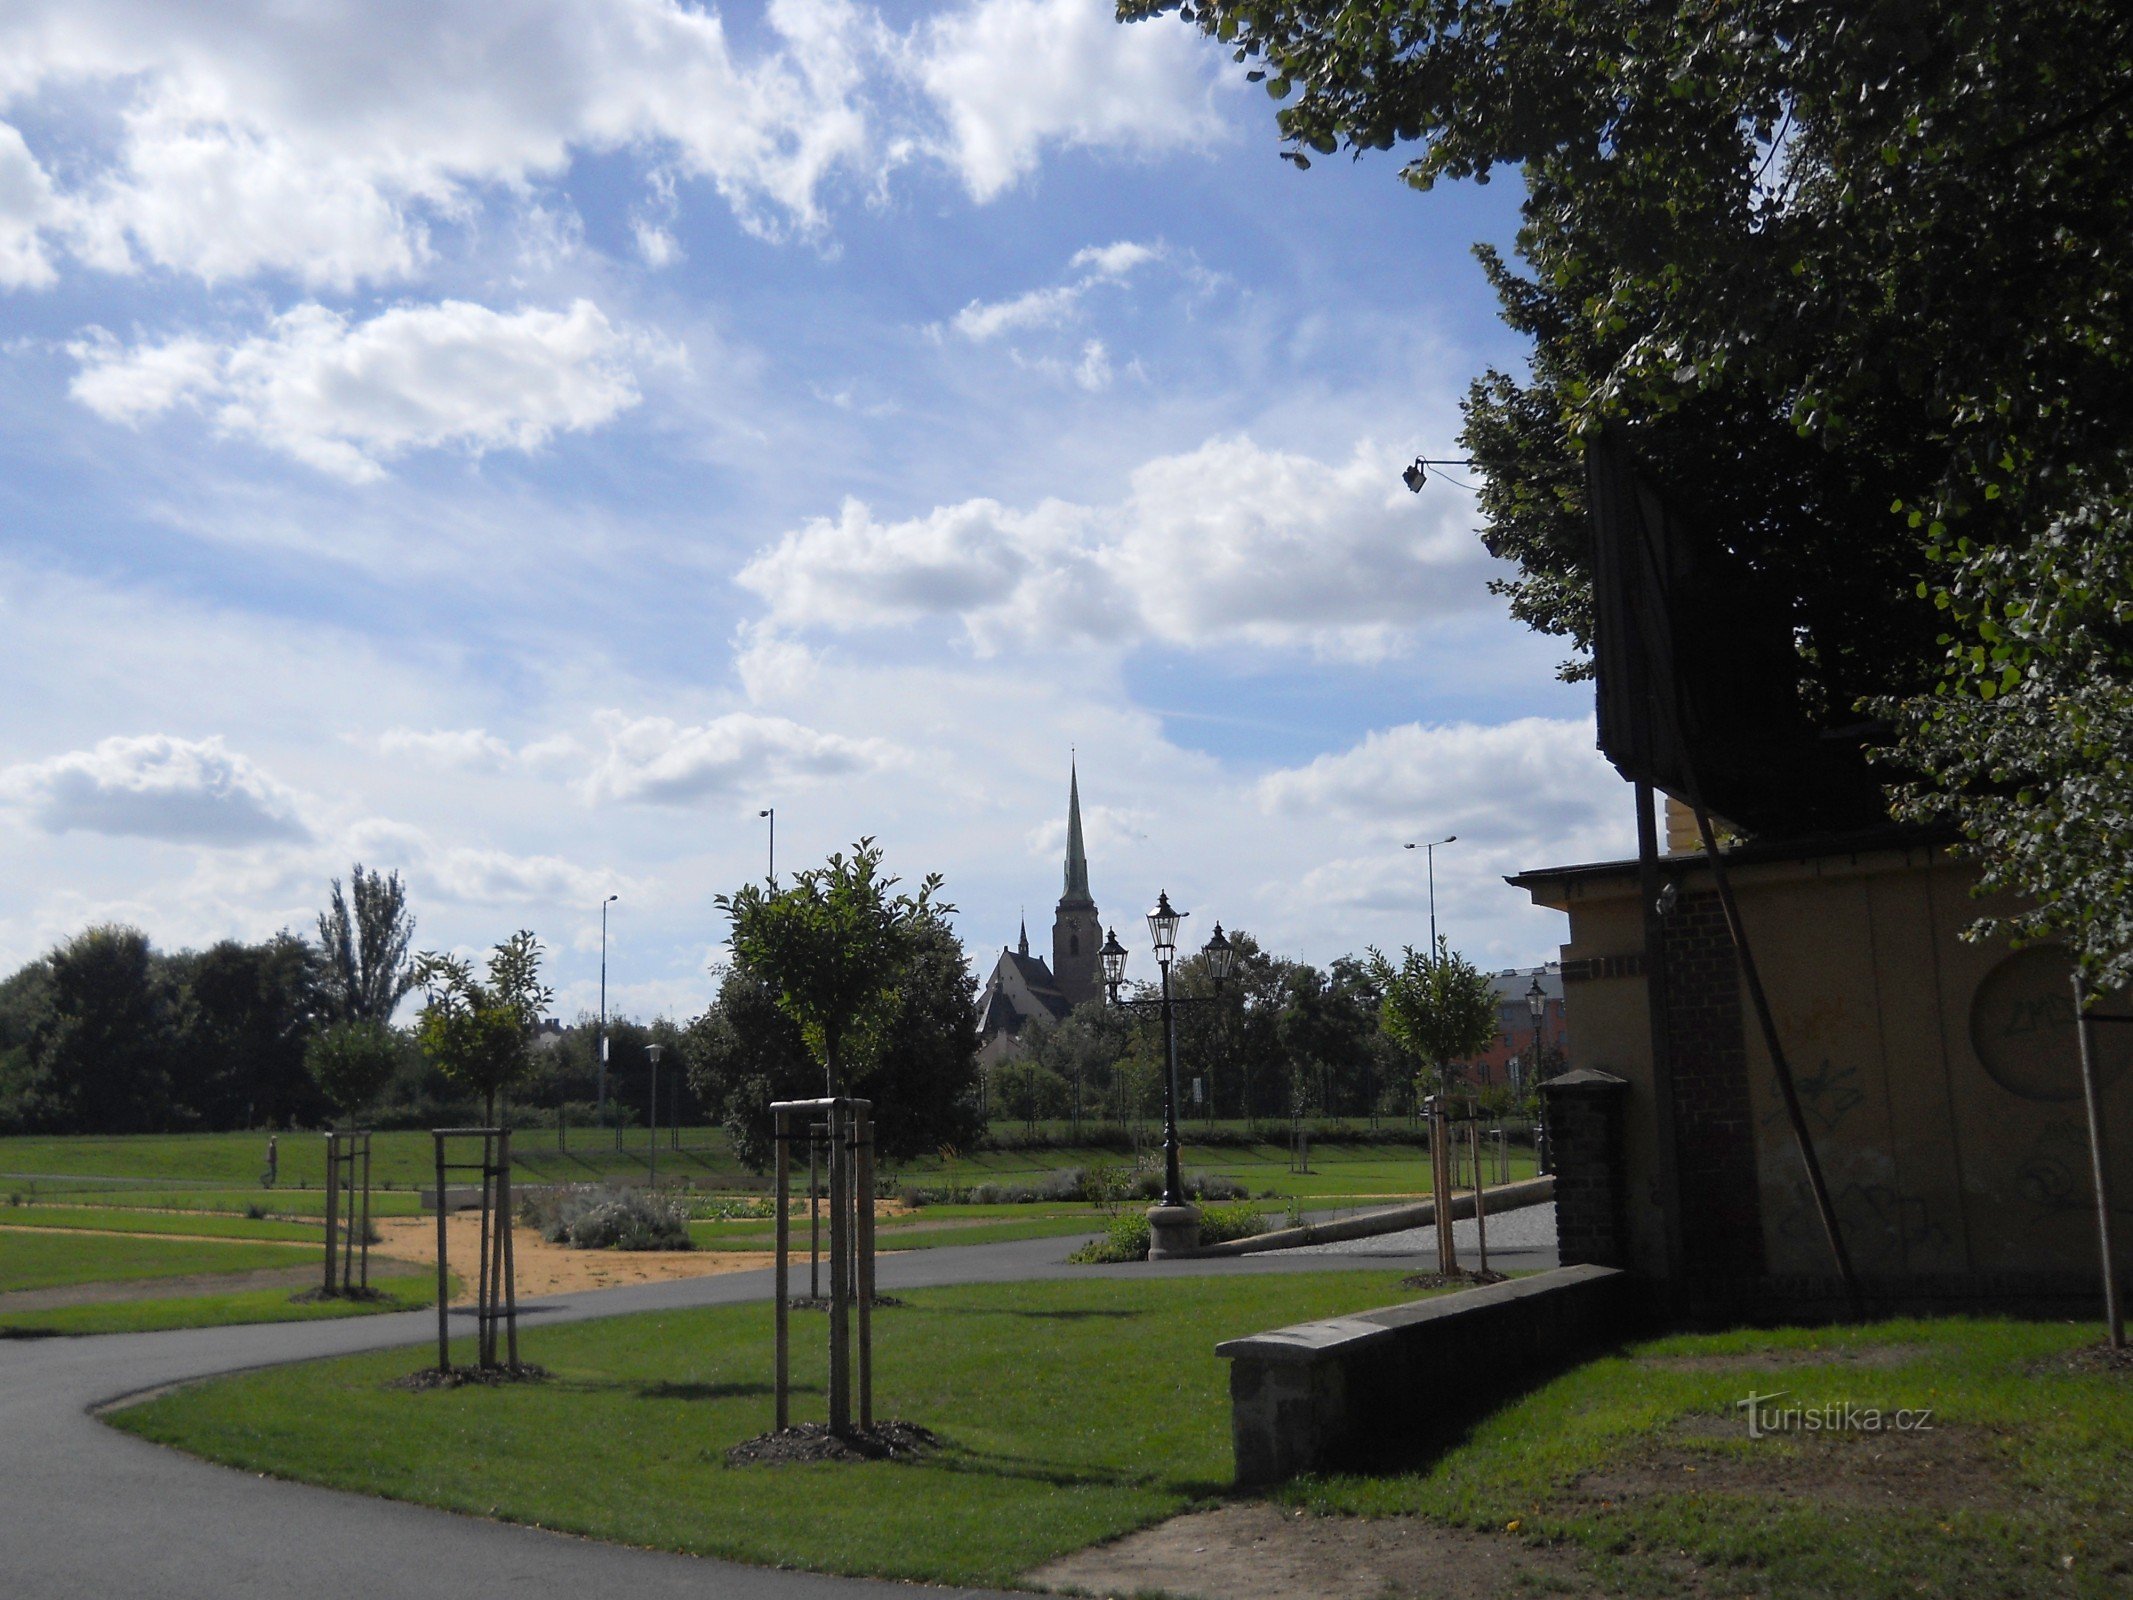 Entrée du parc avec vue sur la cathédrale de Pilsen de St. Barthélemy